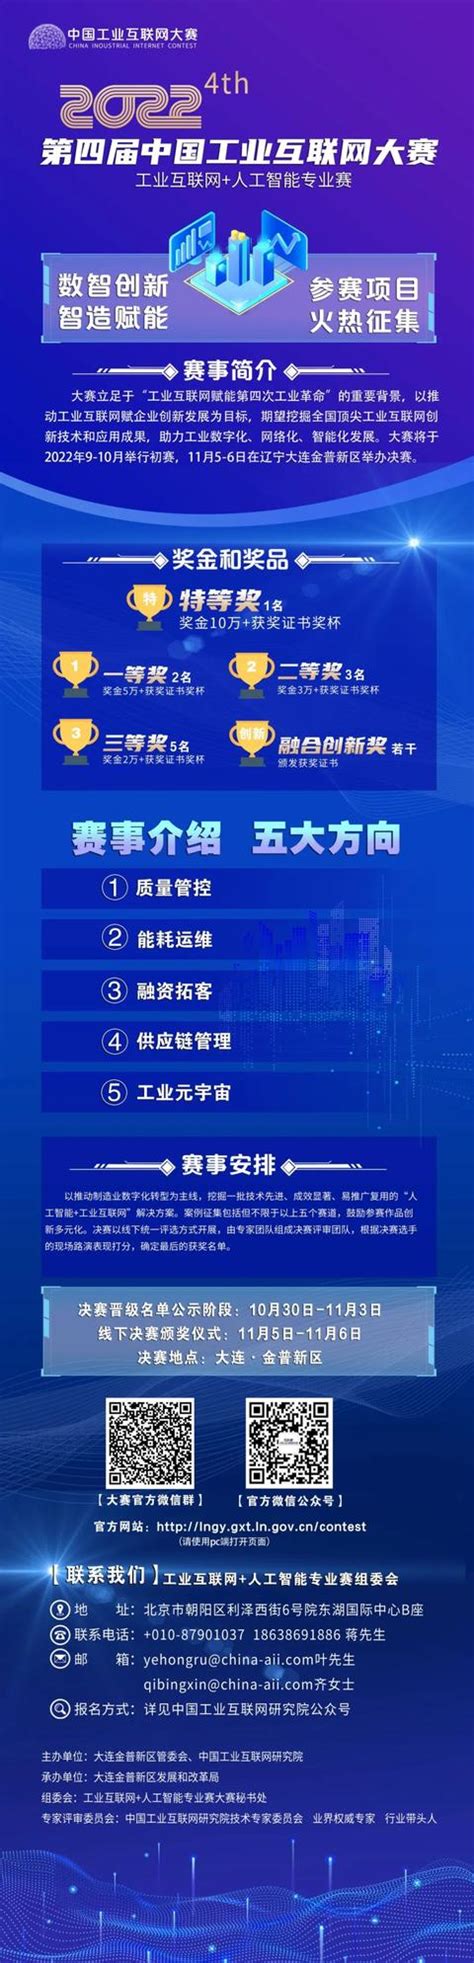 2021华为中国大学生ICT大赛问题解答